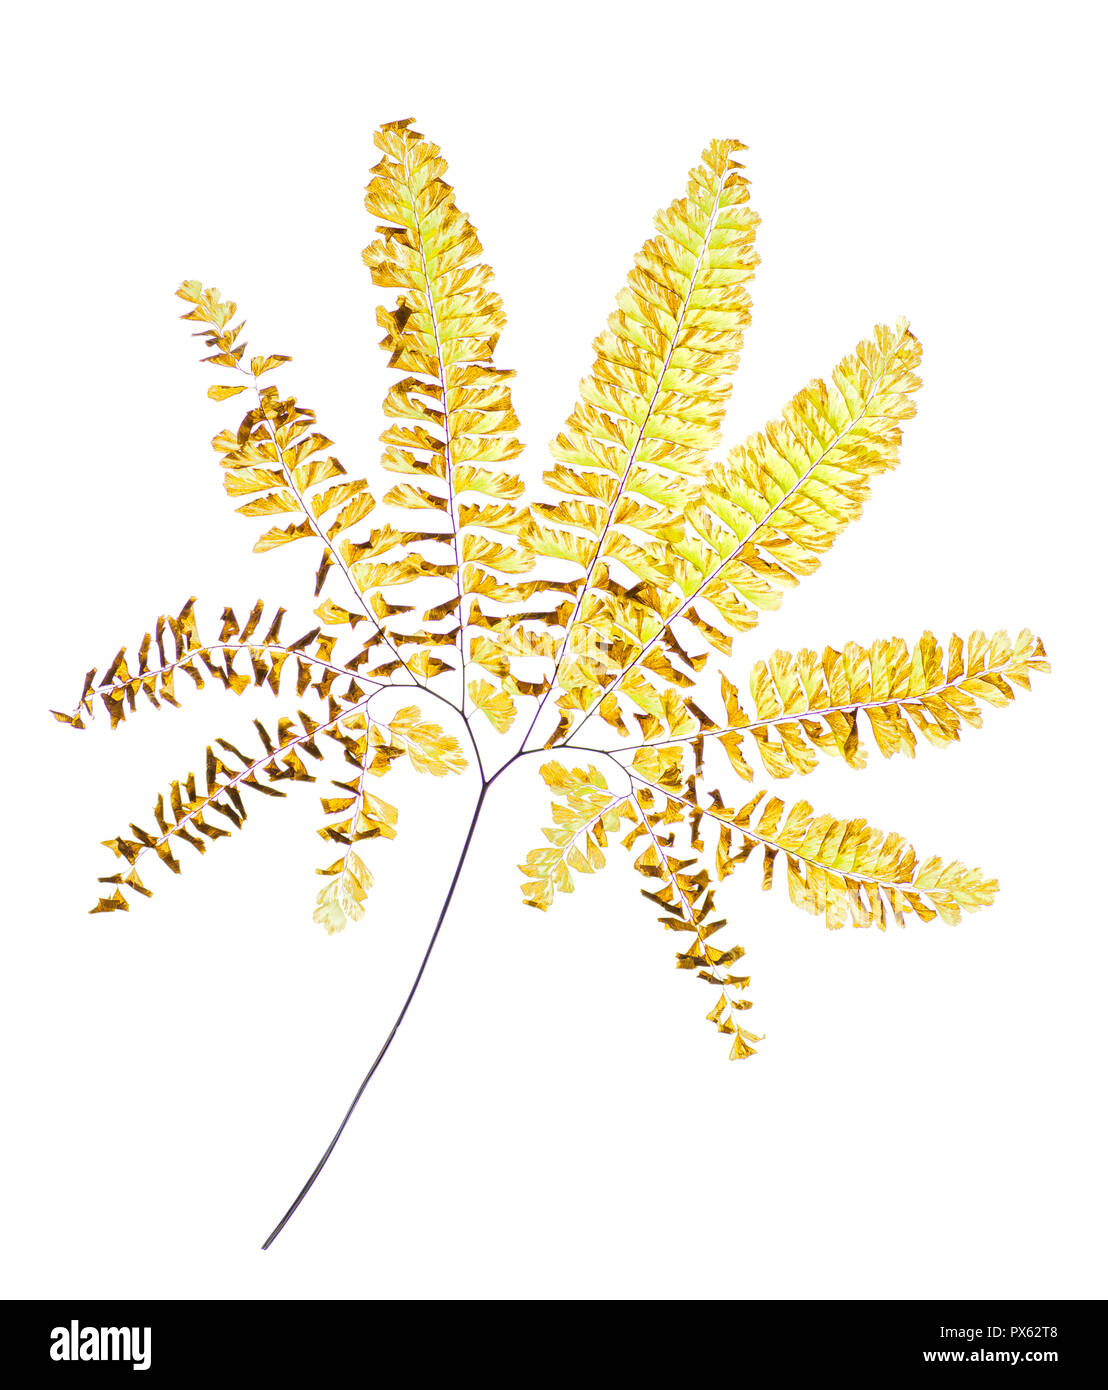 Wedel der Nördlichen maidenhair fern (Adiantum pedatum) Mitte November in Central Virginia. Stockfoto